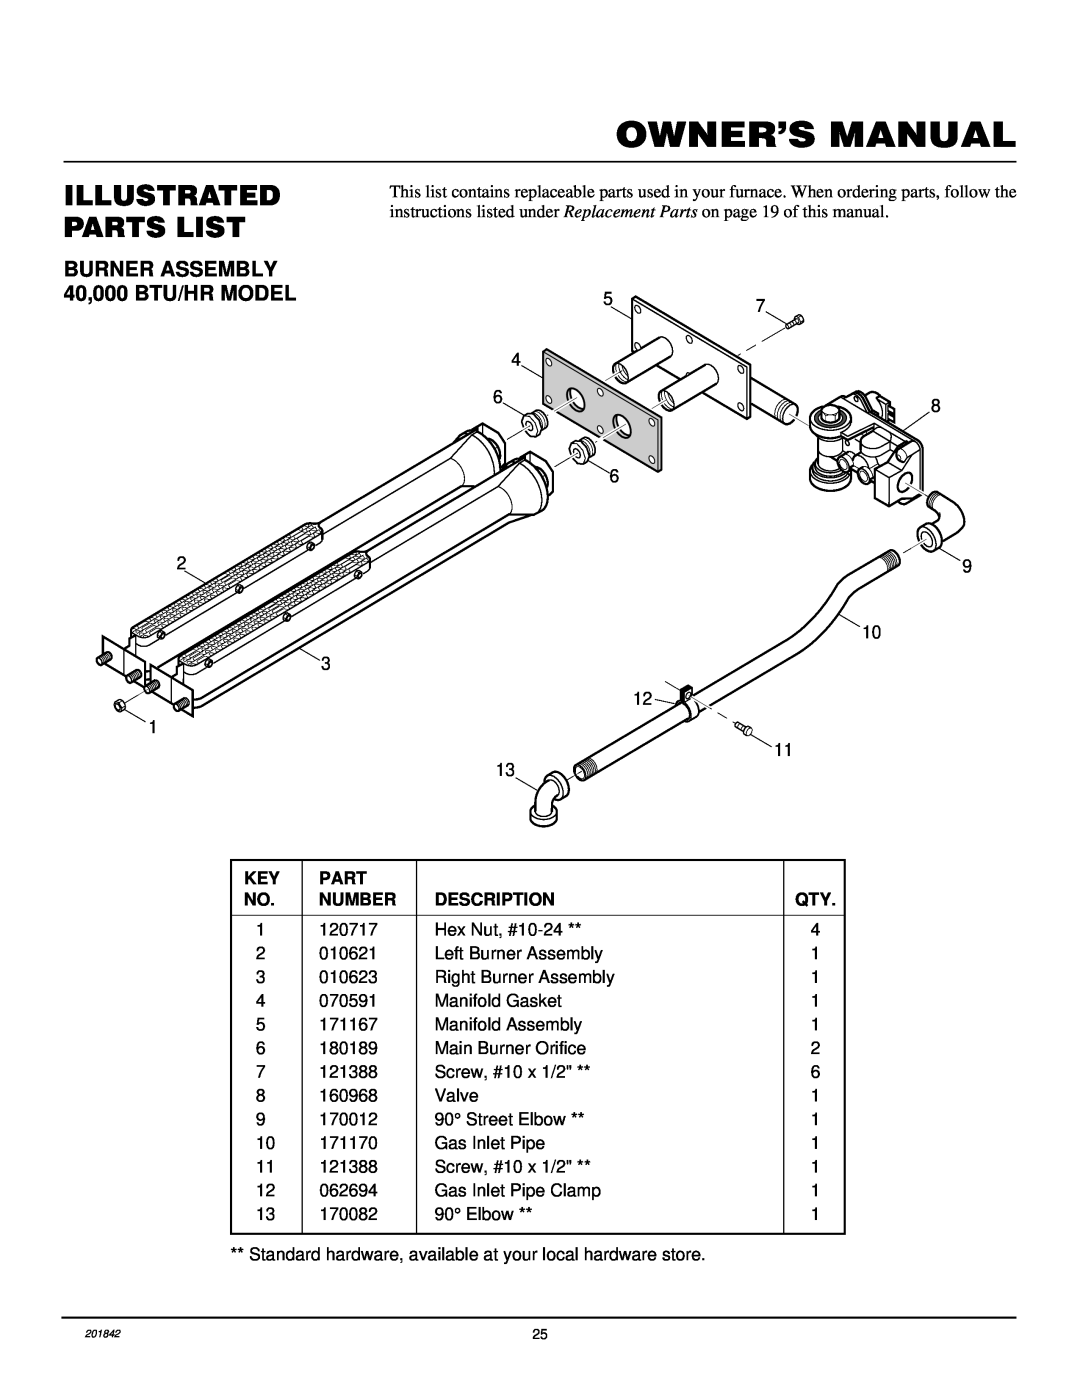 Williams 4003532 Owner’S Manual, Illustrated Parts List, BURNER ASSEMBLY 40,000 BTU/HR MODEL, 57 4, 29 10 3 12 1 11 13 